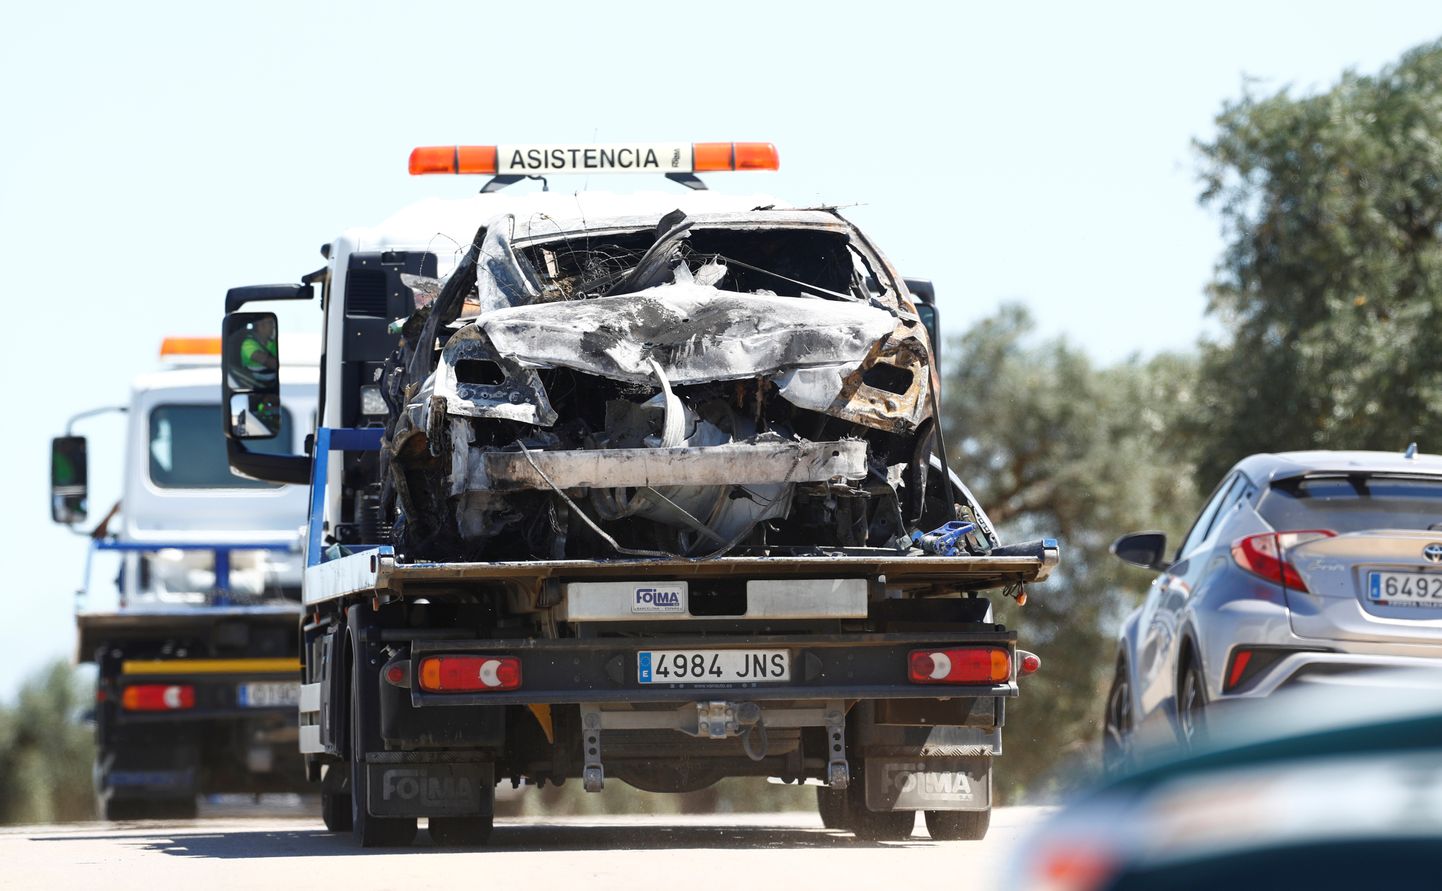 Bojāgājušā spāņu futbolista Hosē Antonio Reijesa automašīna pēc autoavārijas